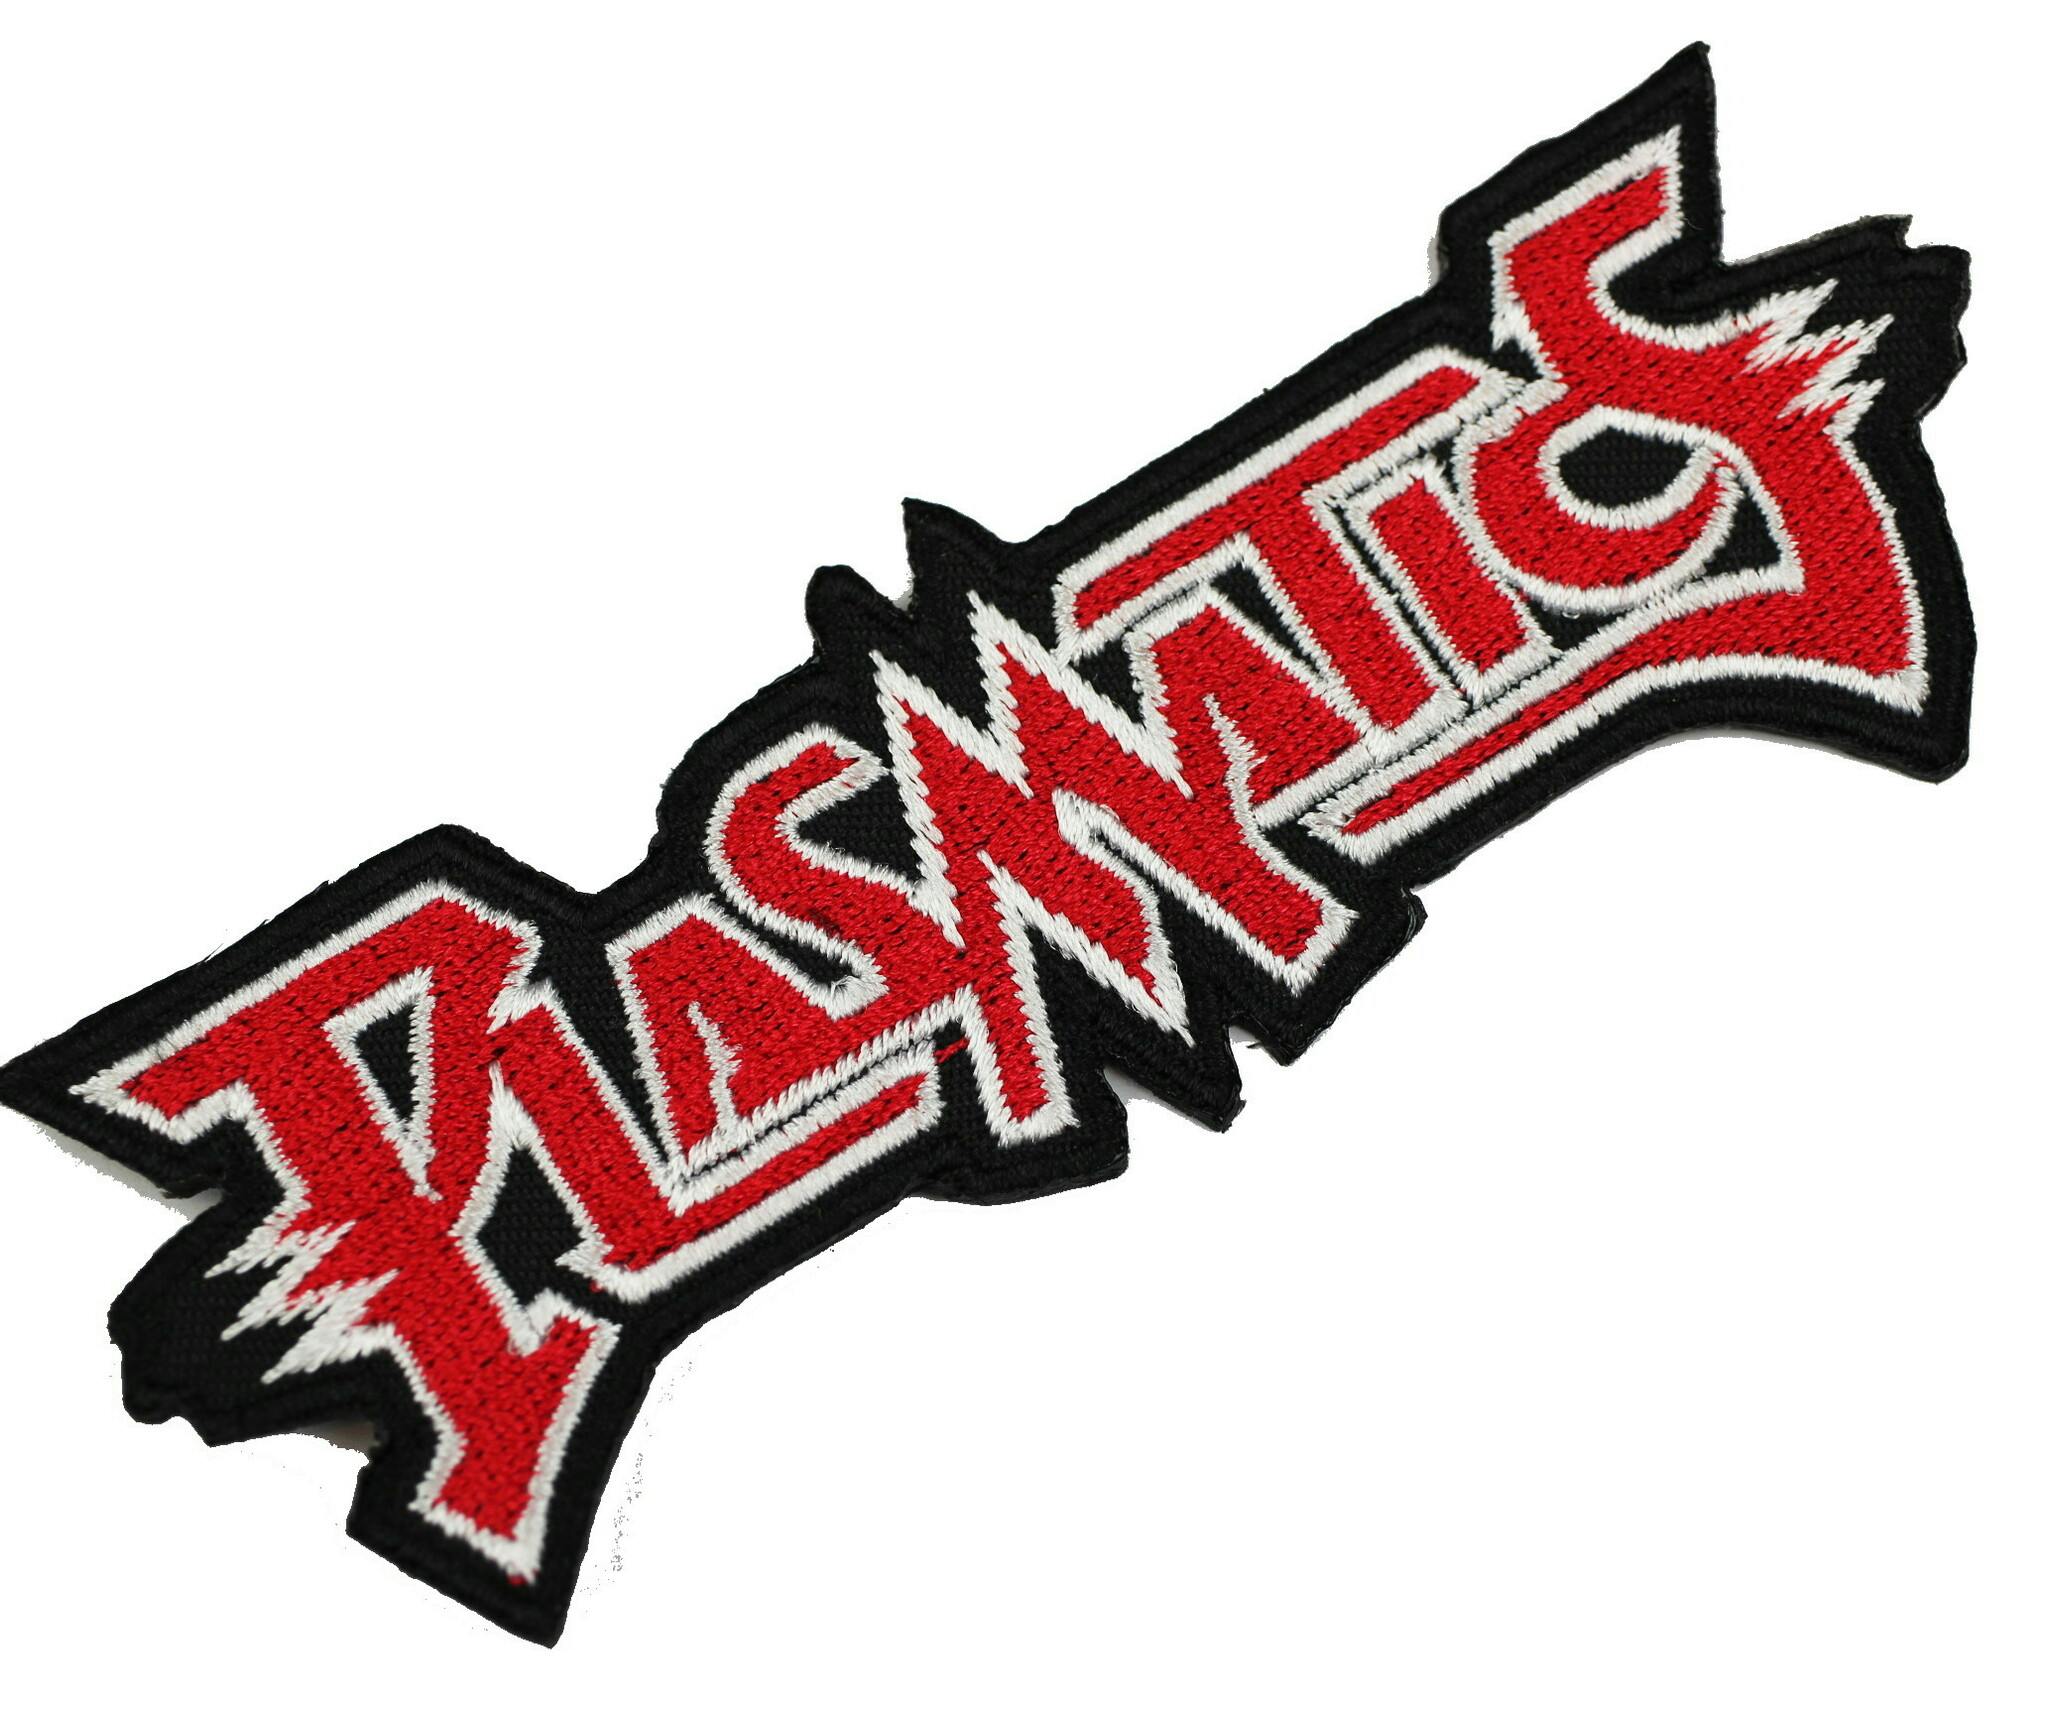 Plasmatics logo patch